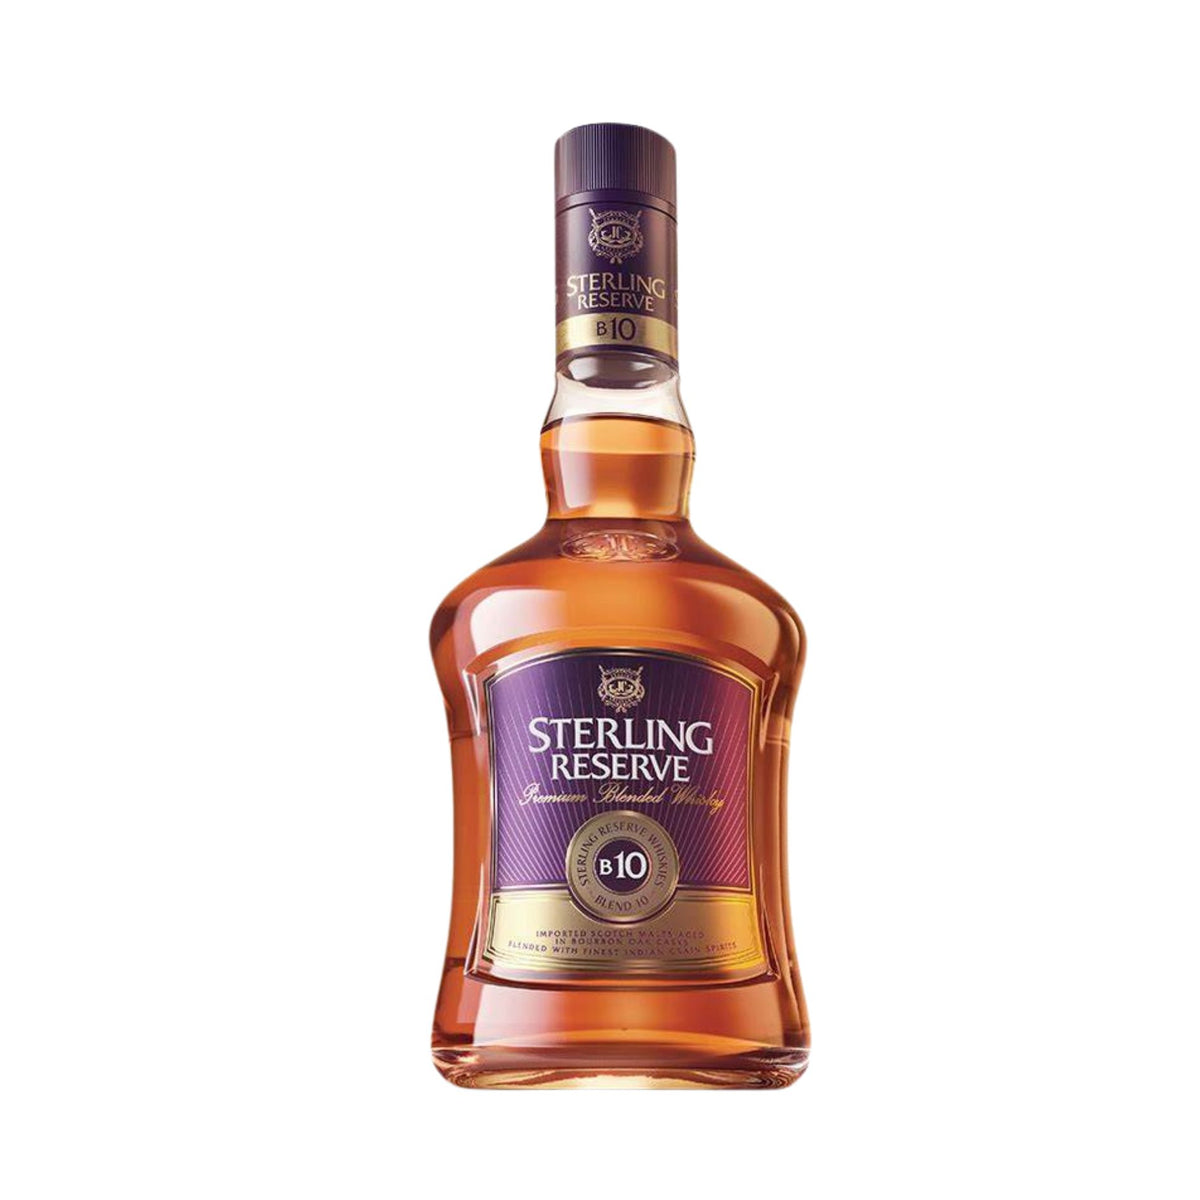 Sterling Reserve B10 Premium Blended Whisky